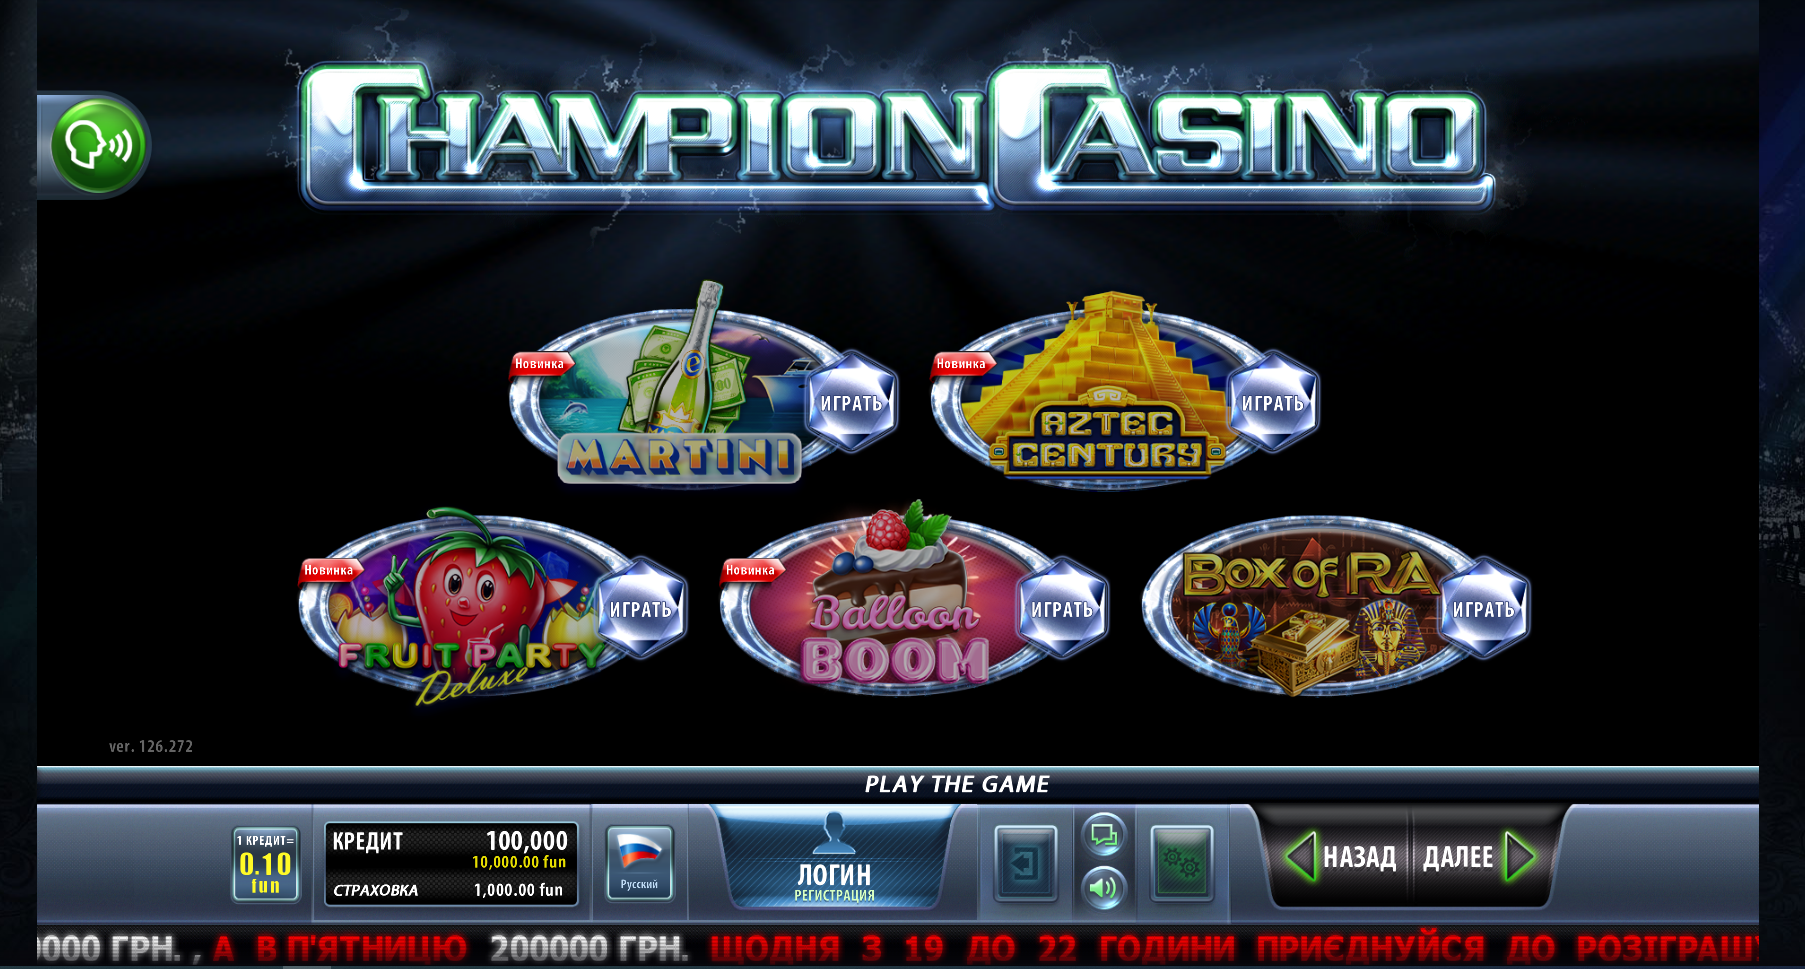 Champion casino site